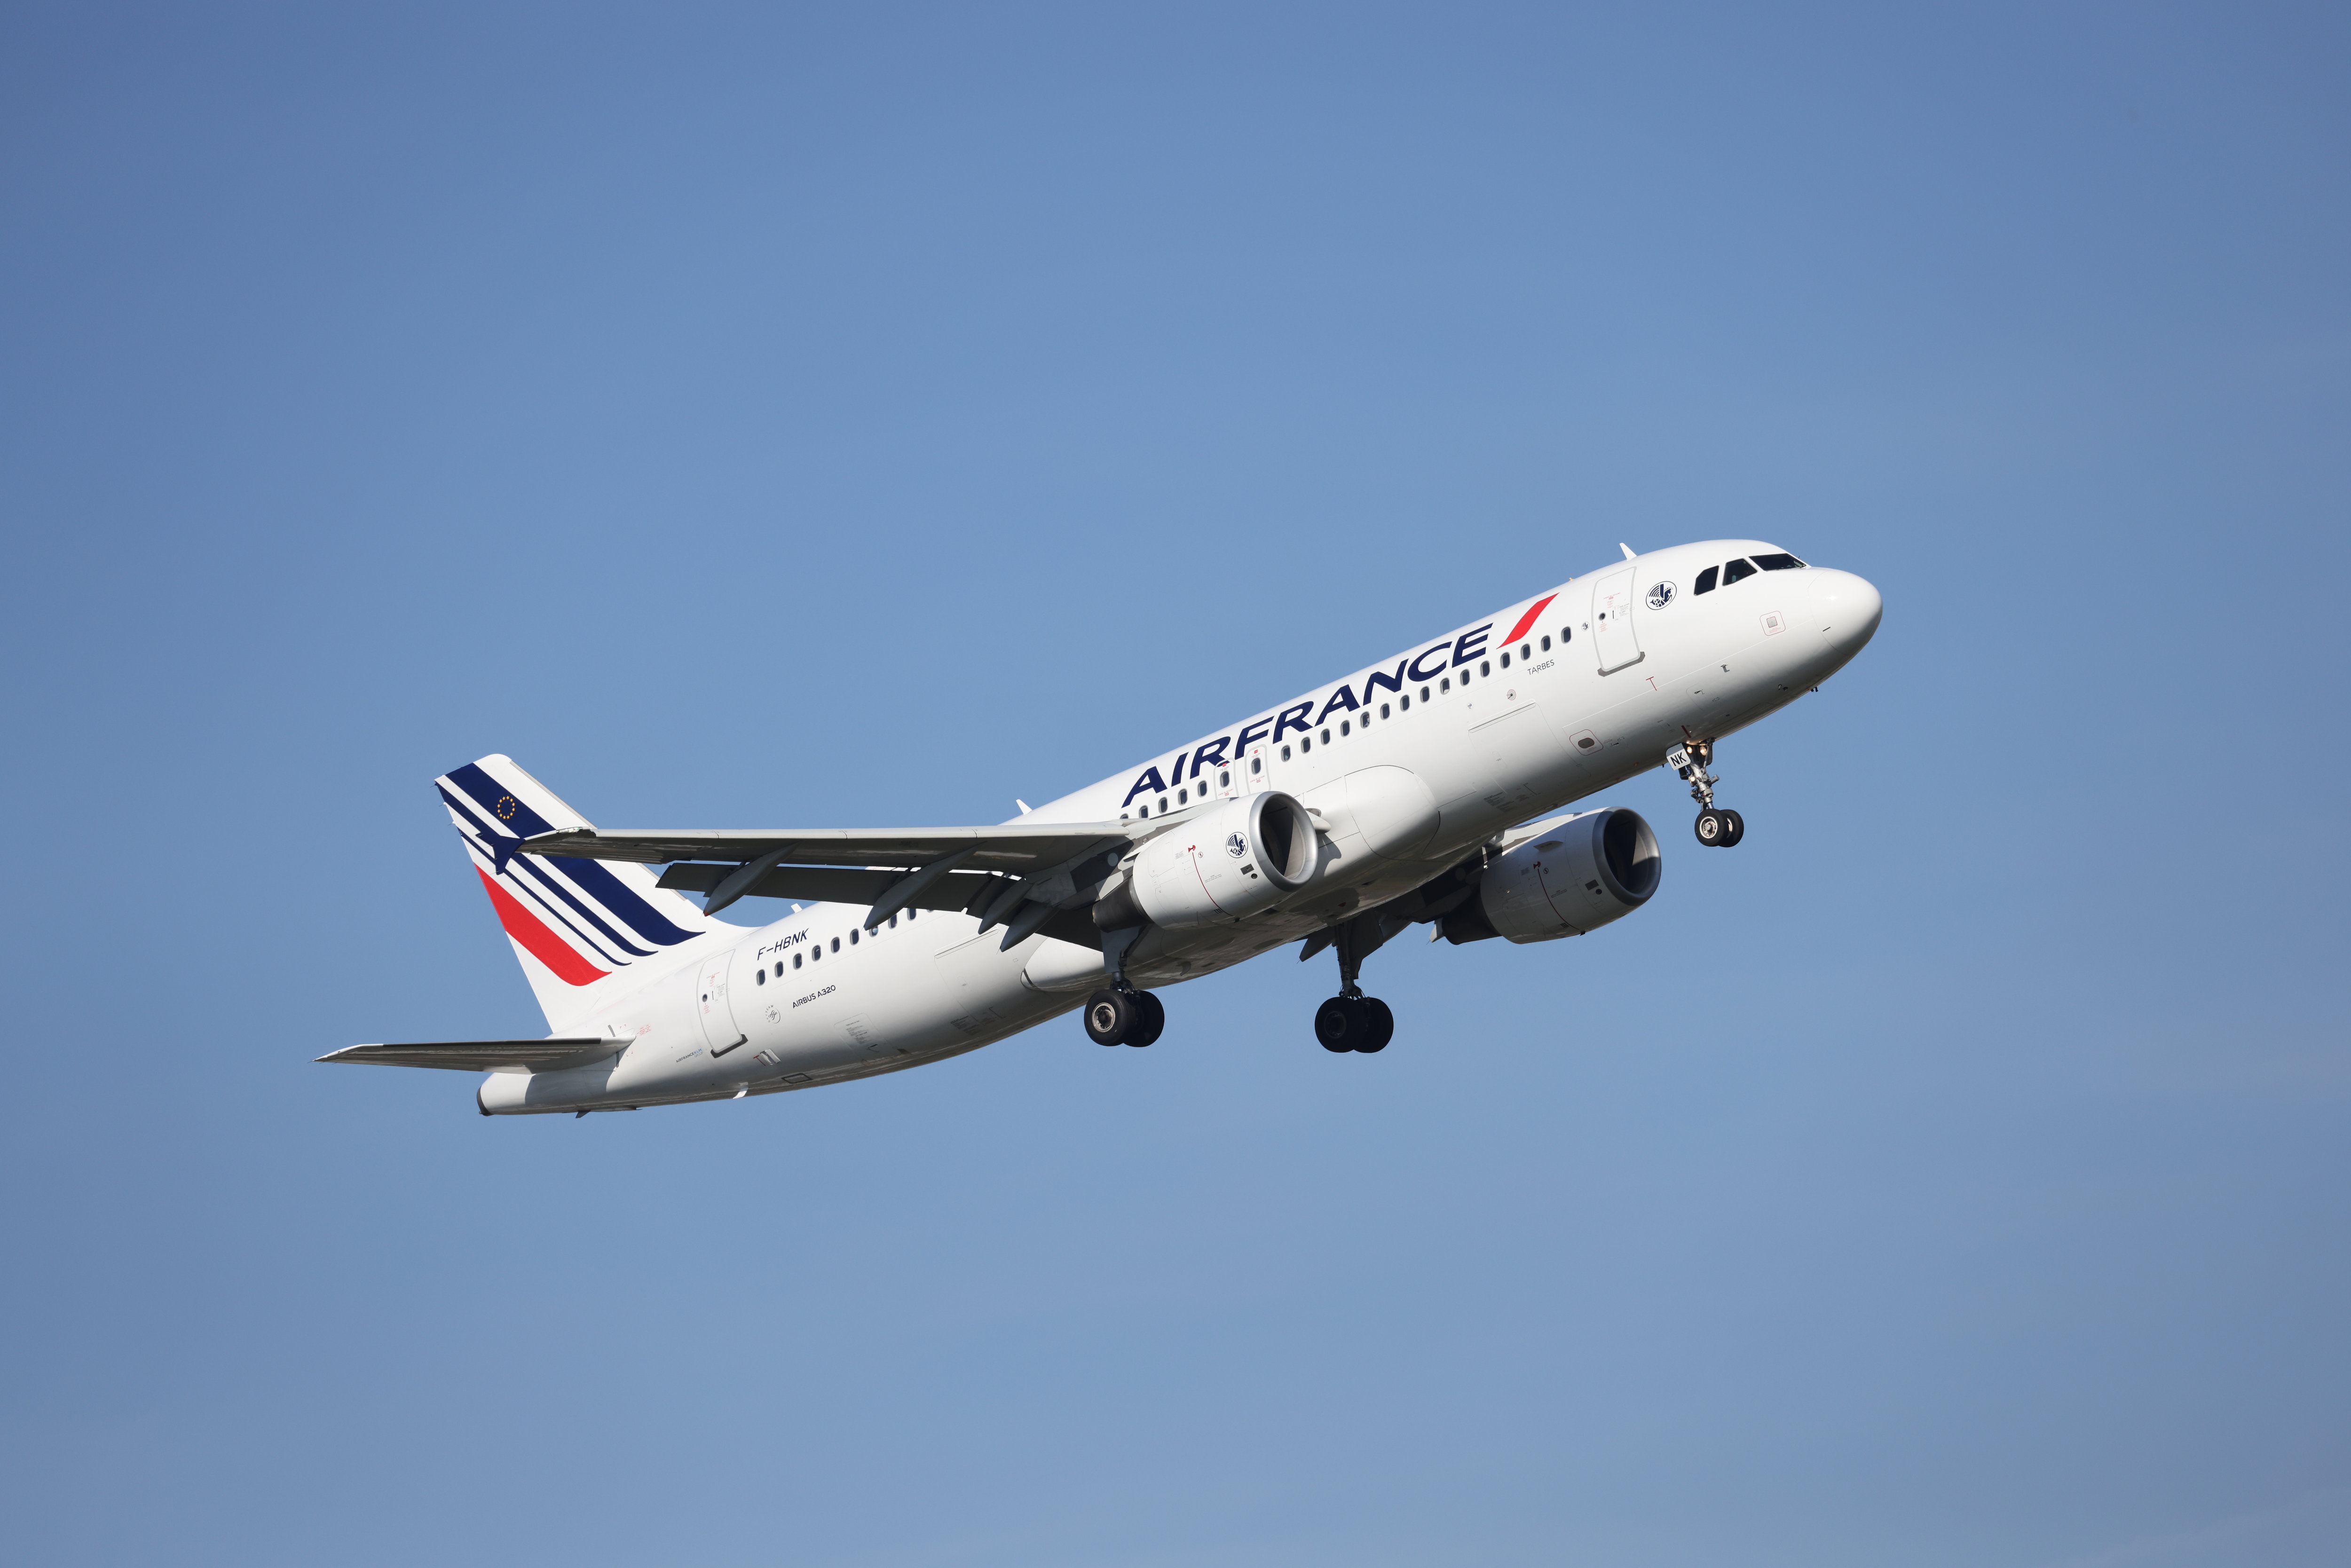 Un vol Air France atterrit d'urgence à Pékin après «un incident technique»  - Le Parisien